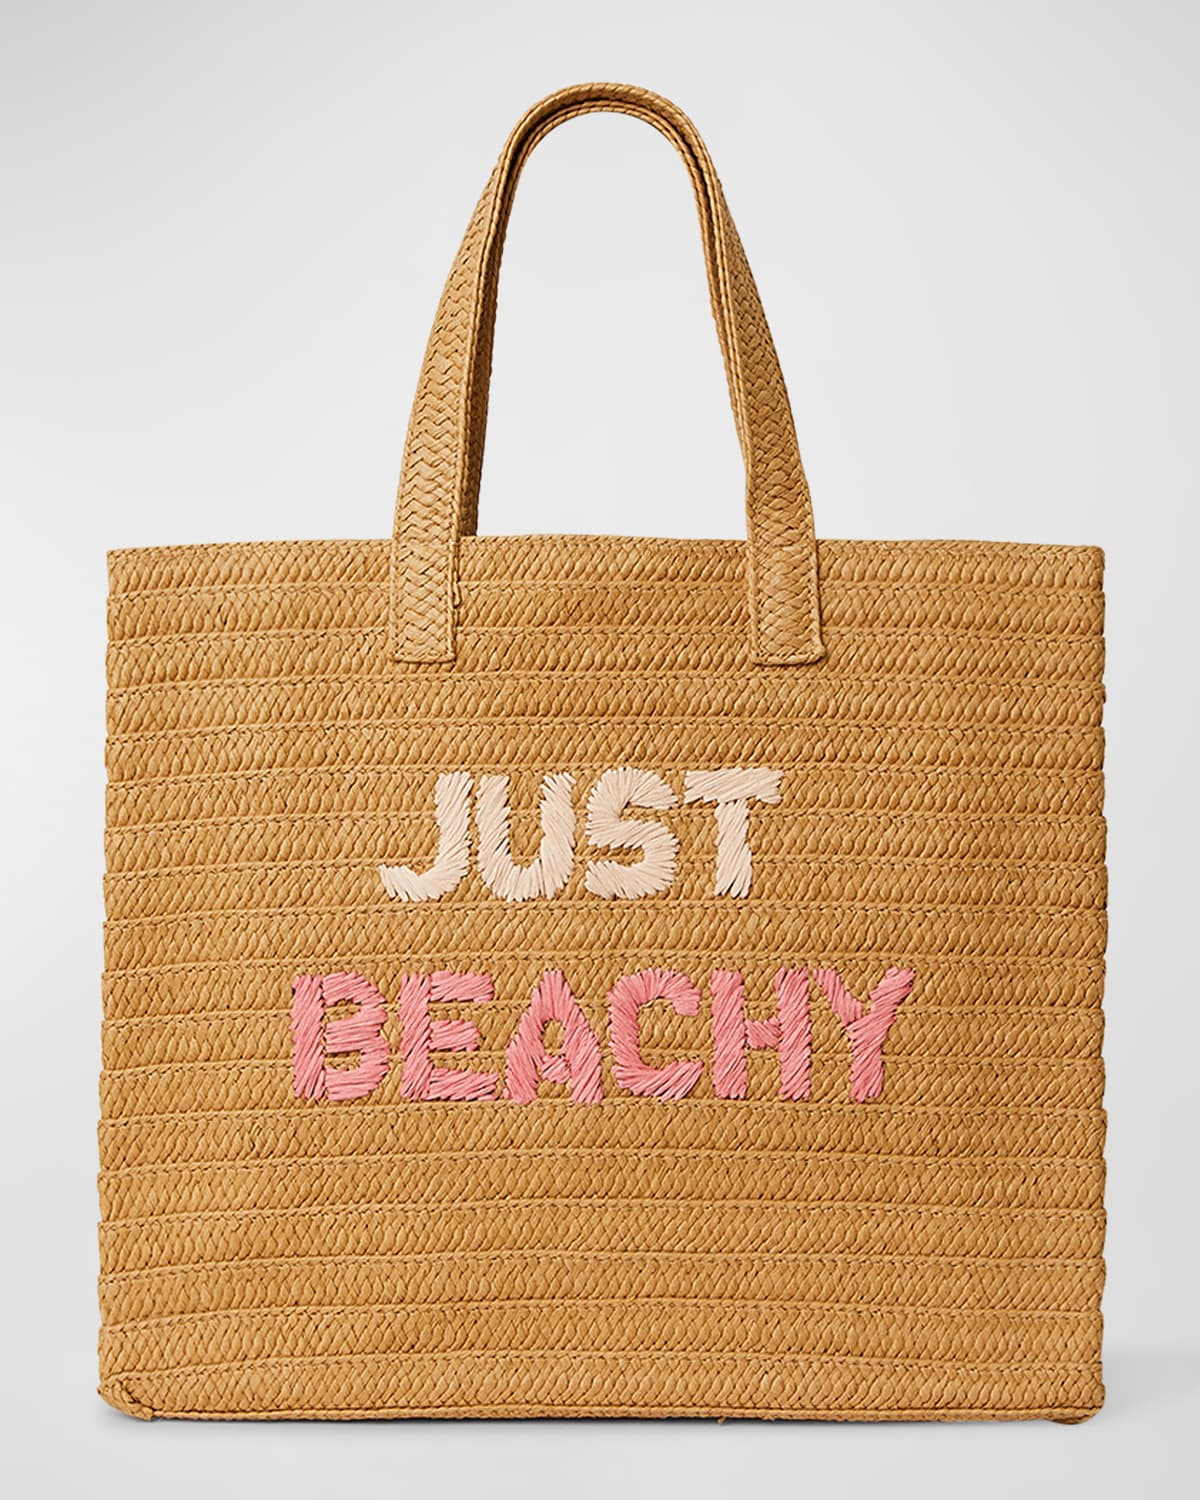 Just Beachy Straw Tote Bag